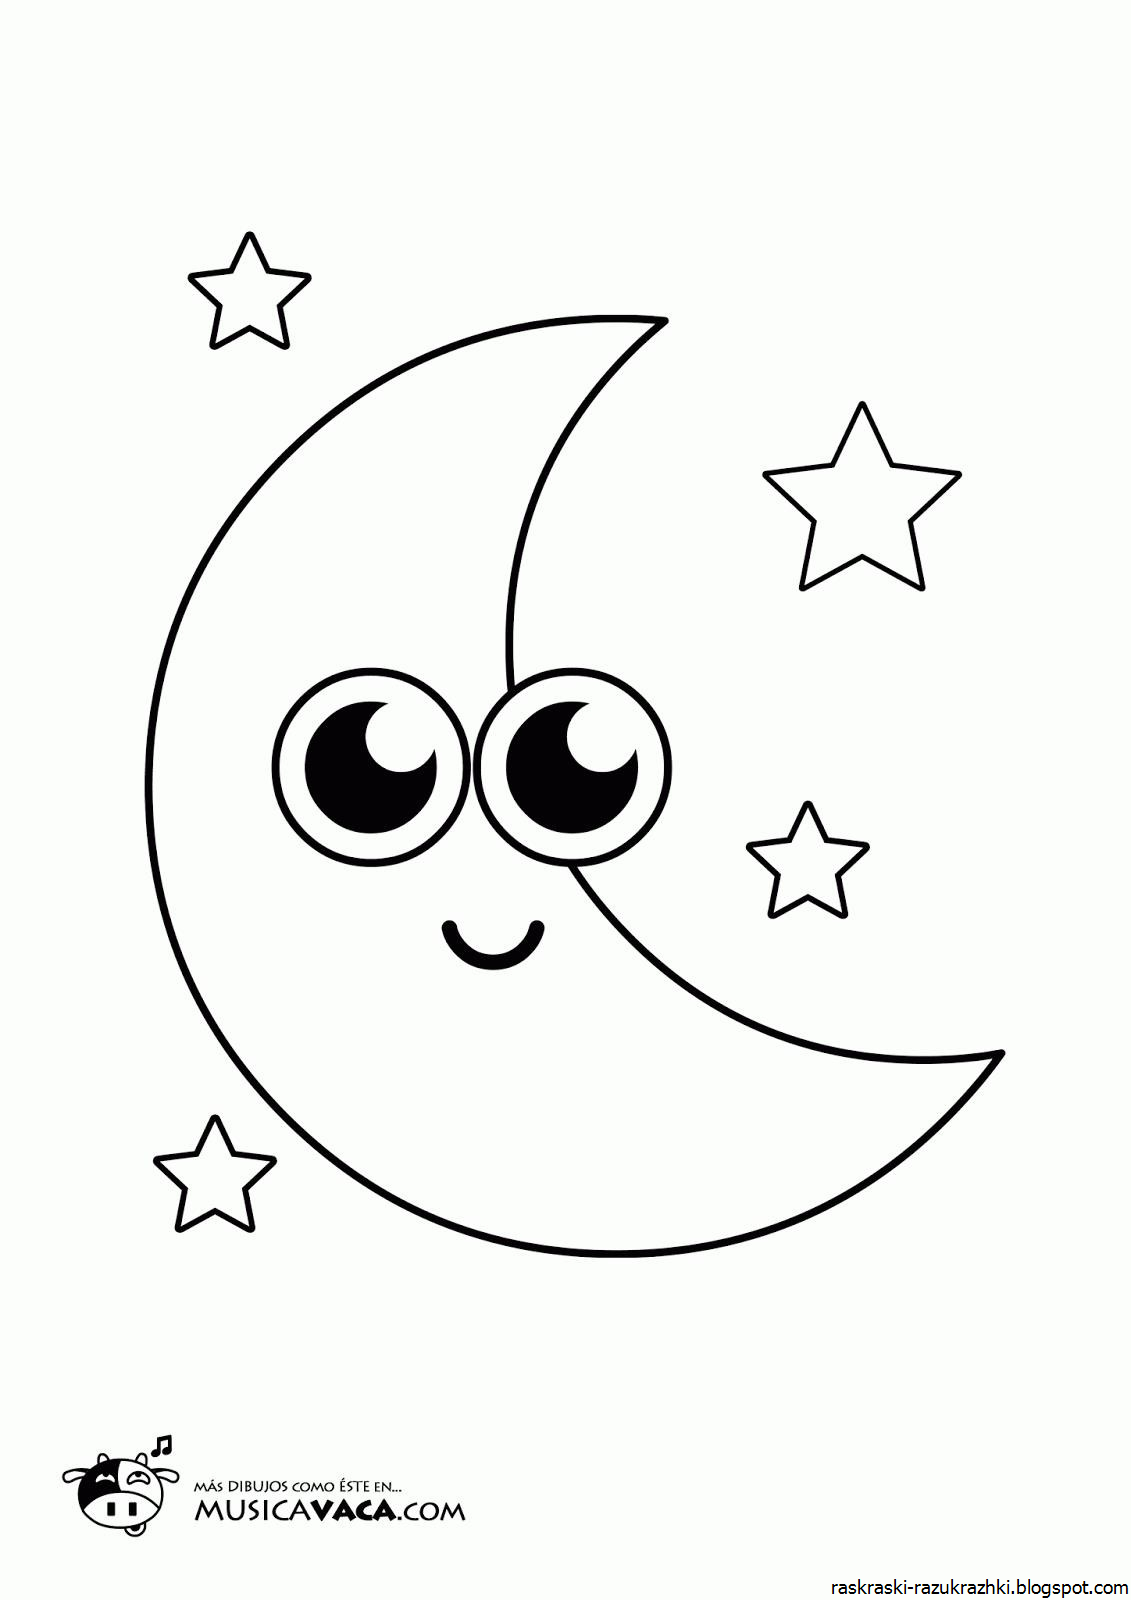 Луна распечатать картинку. Луна раскраска. Луна раскраска для детей. Месяц раскраска. Луна и звезды раскраска для детей.